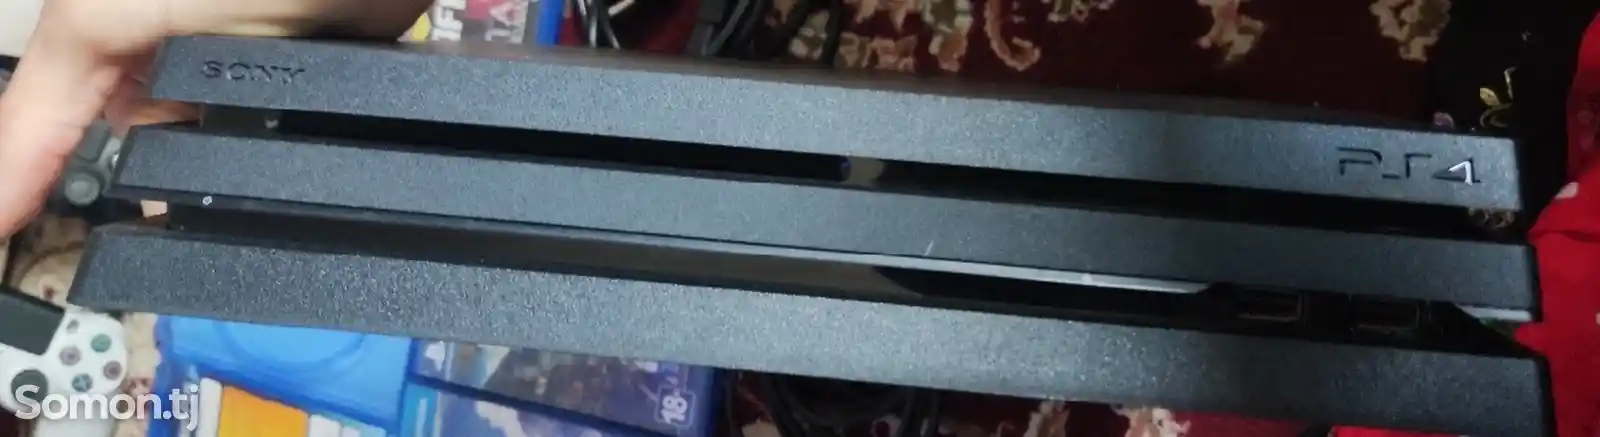 Игровая приставка Sony PlayStation 4 pro 1tb 11.00 FW Full HD 4K-9